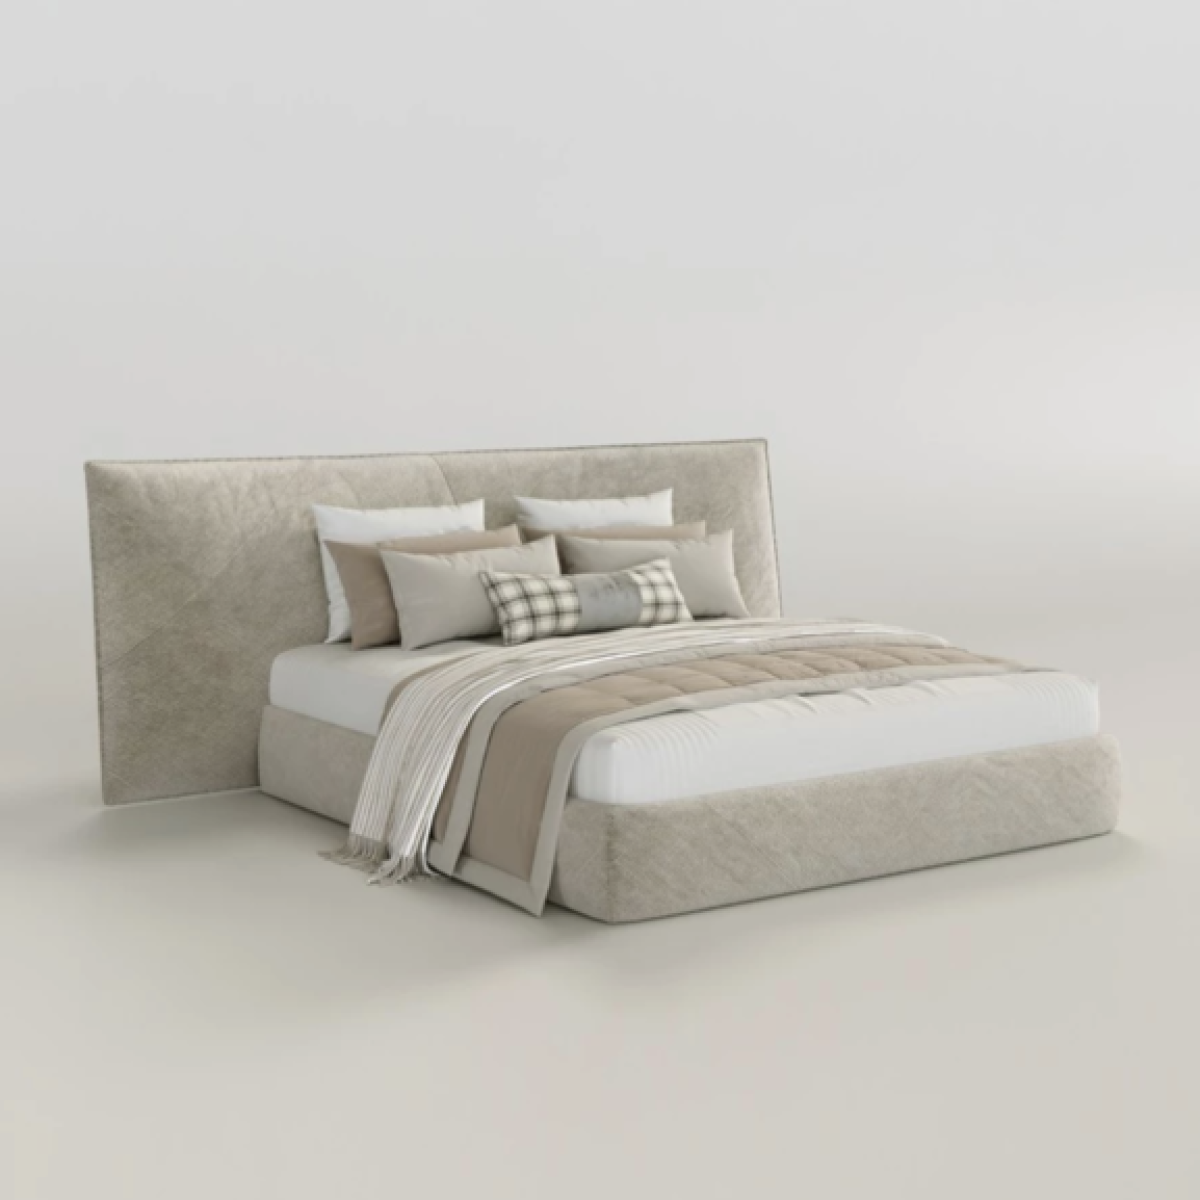 Мягкая мебель в интерьере спальни итальянского стиля